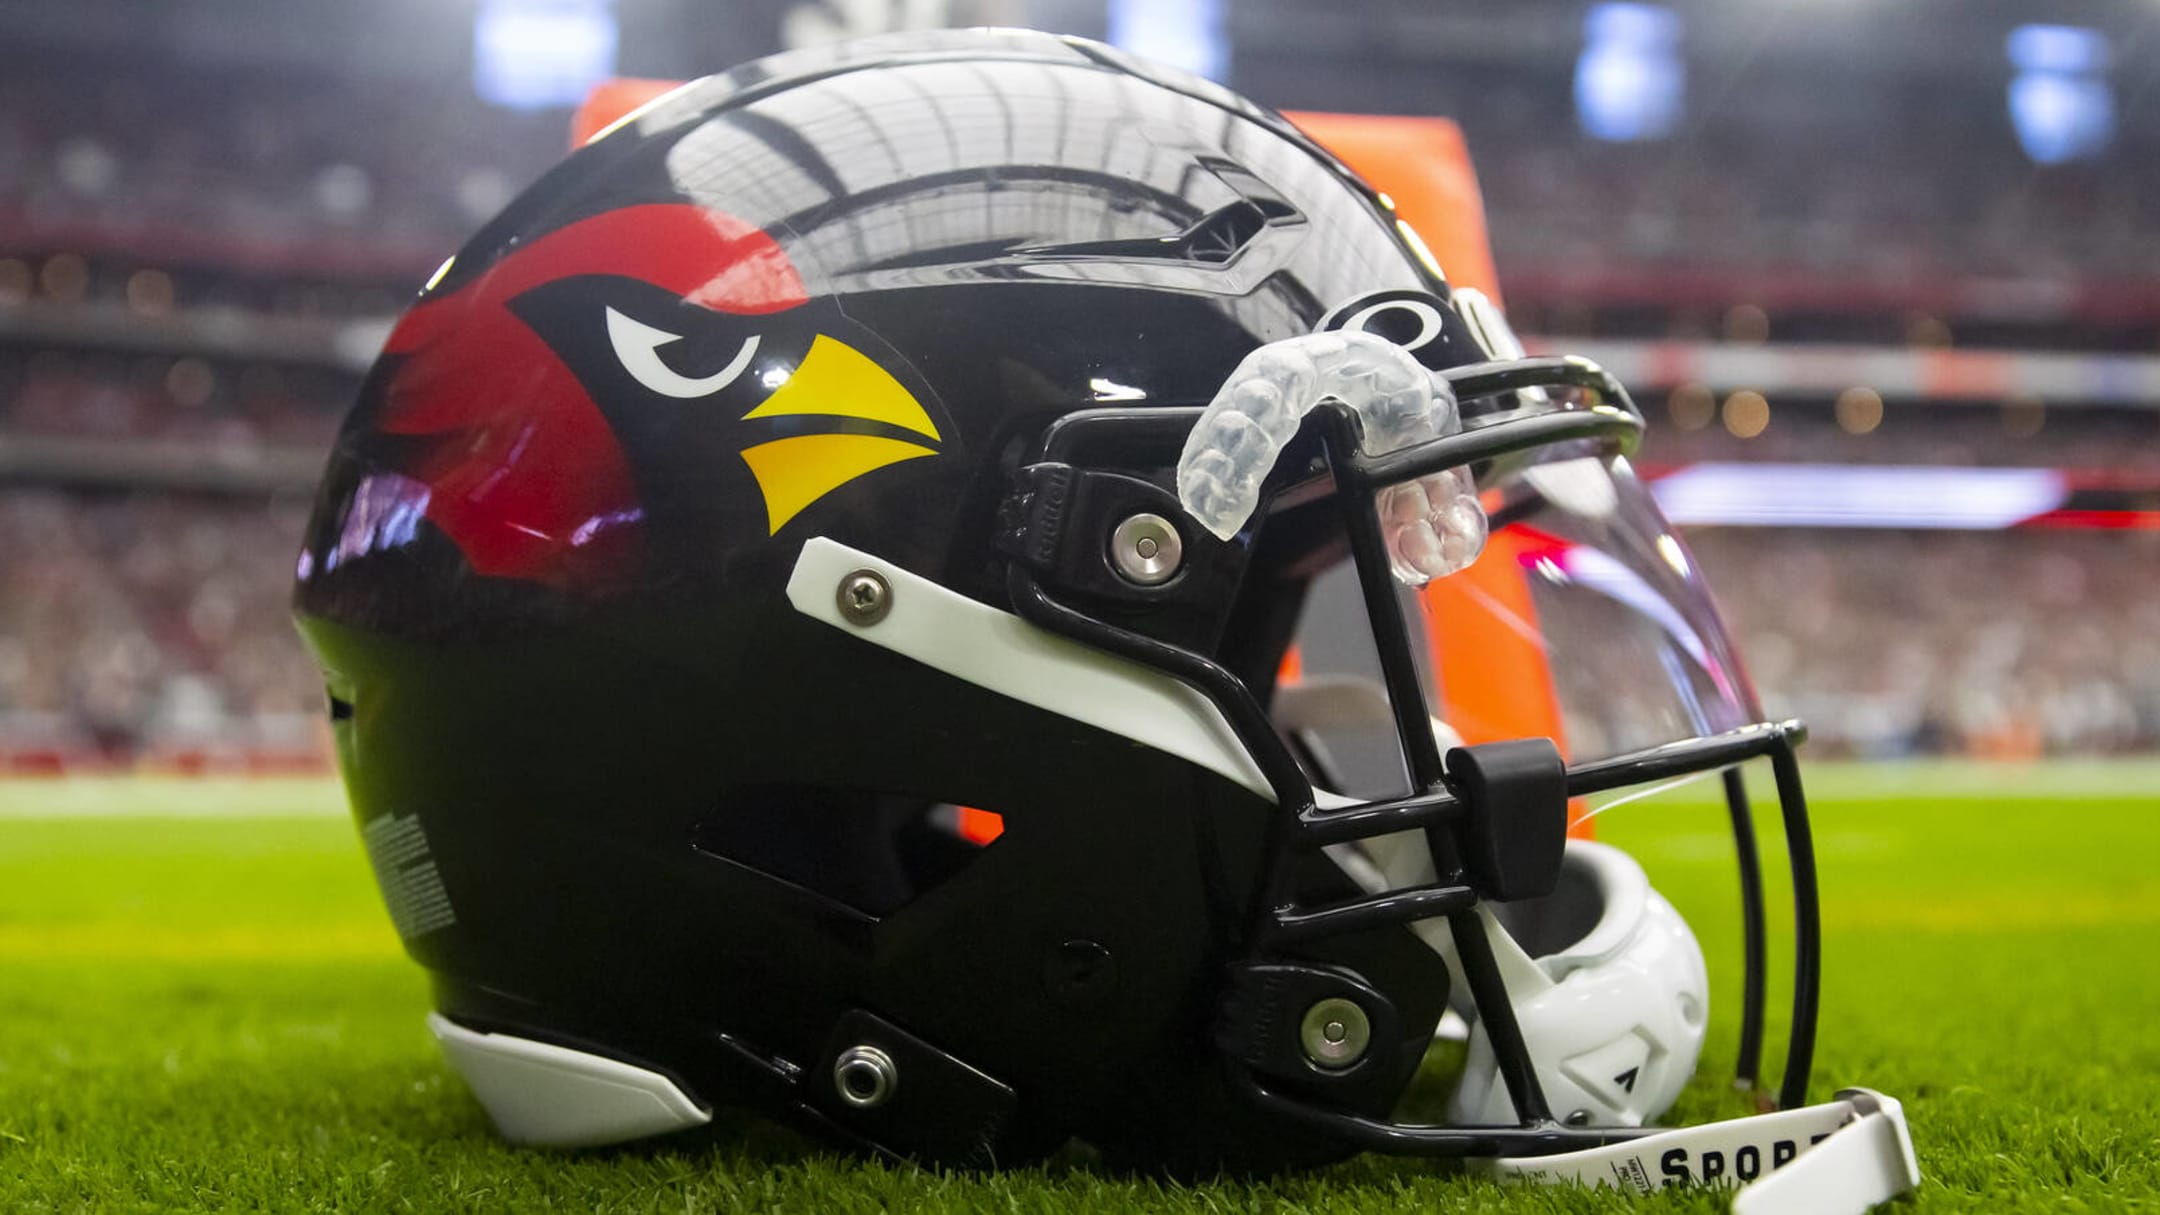 Arizona Cardinals unveil new uniforms, Get your Cardinals' jerseys